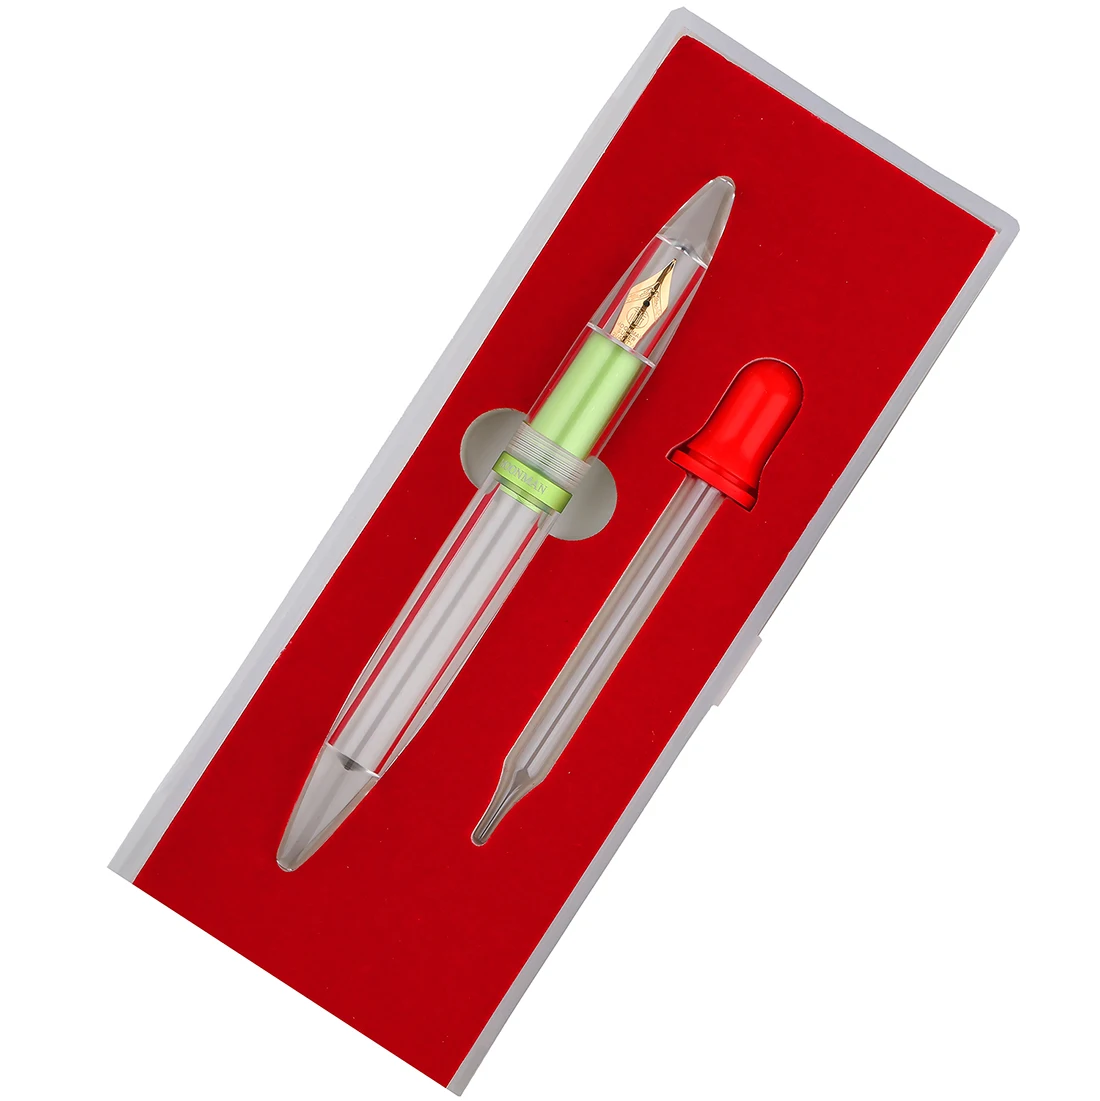 Перьевая ручка Moonman / MAJOHN M2, металлическая, прозрачная, большой емкости, матовая, зеленая, иридиевая, EF/F 0,38/0,5 мм, подарочный набор